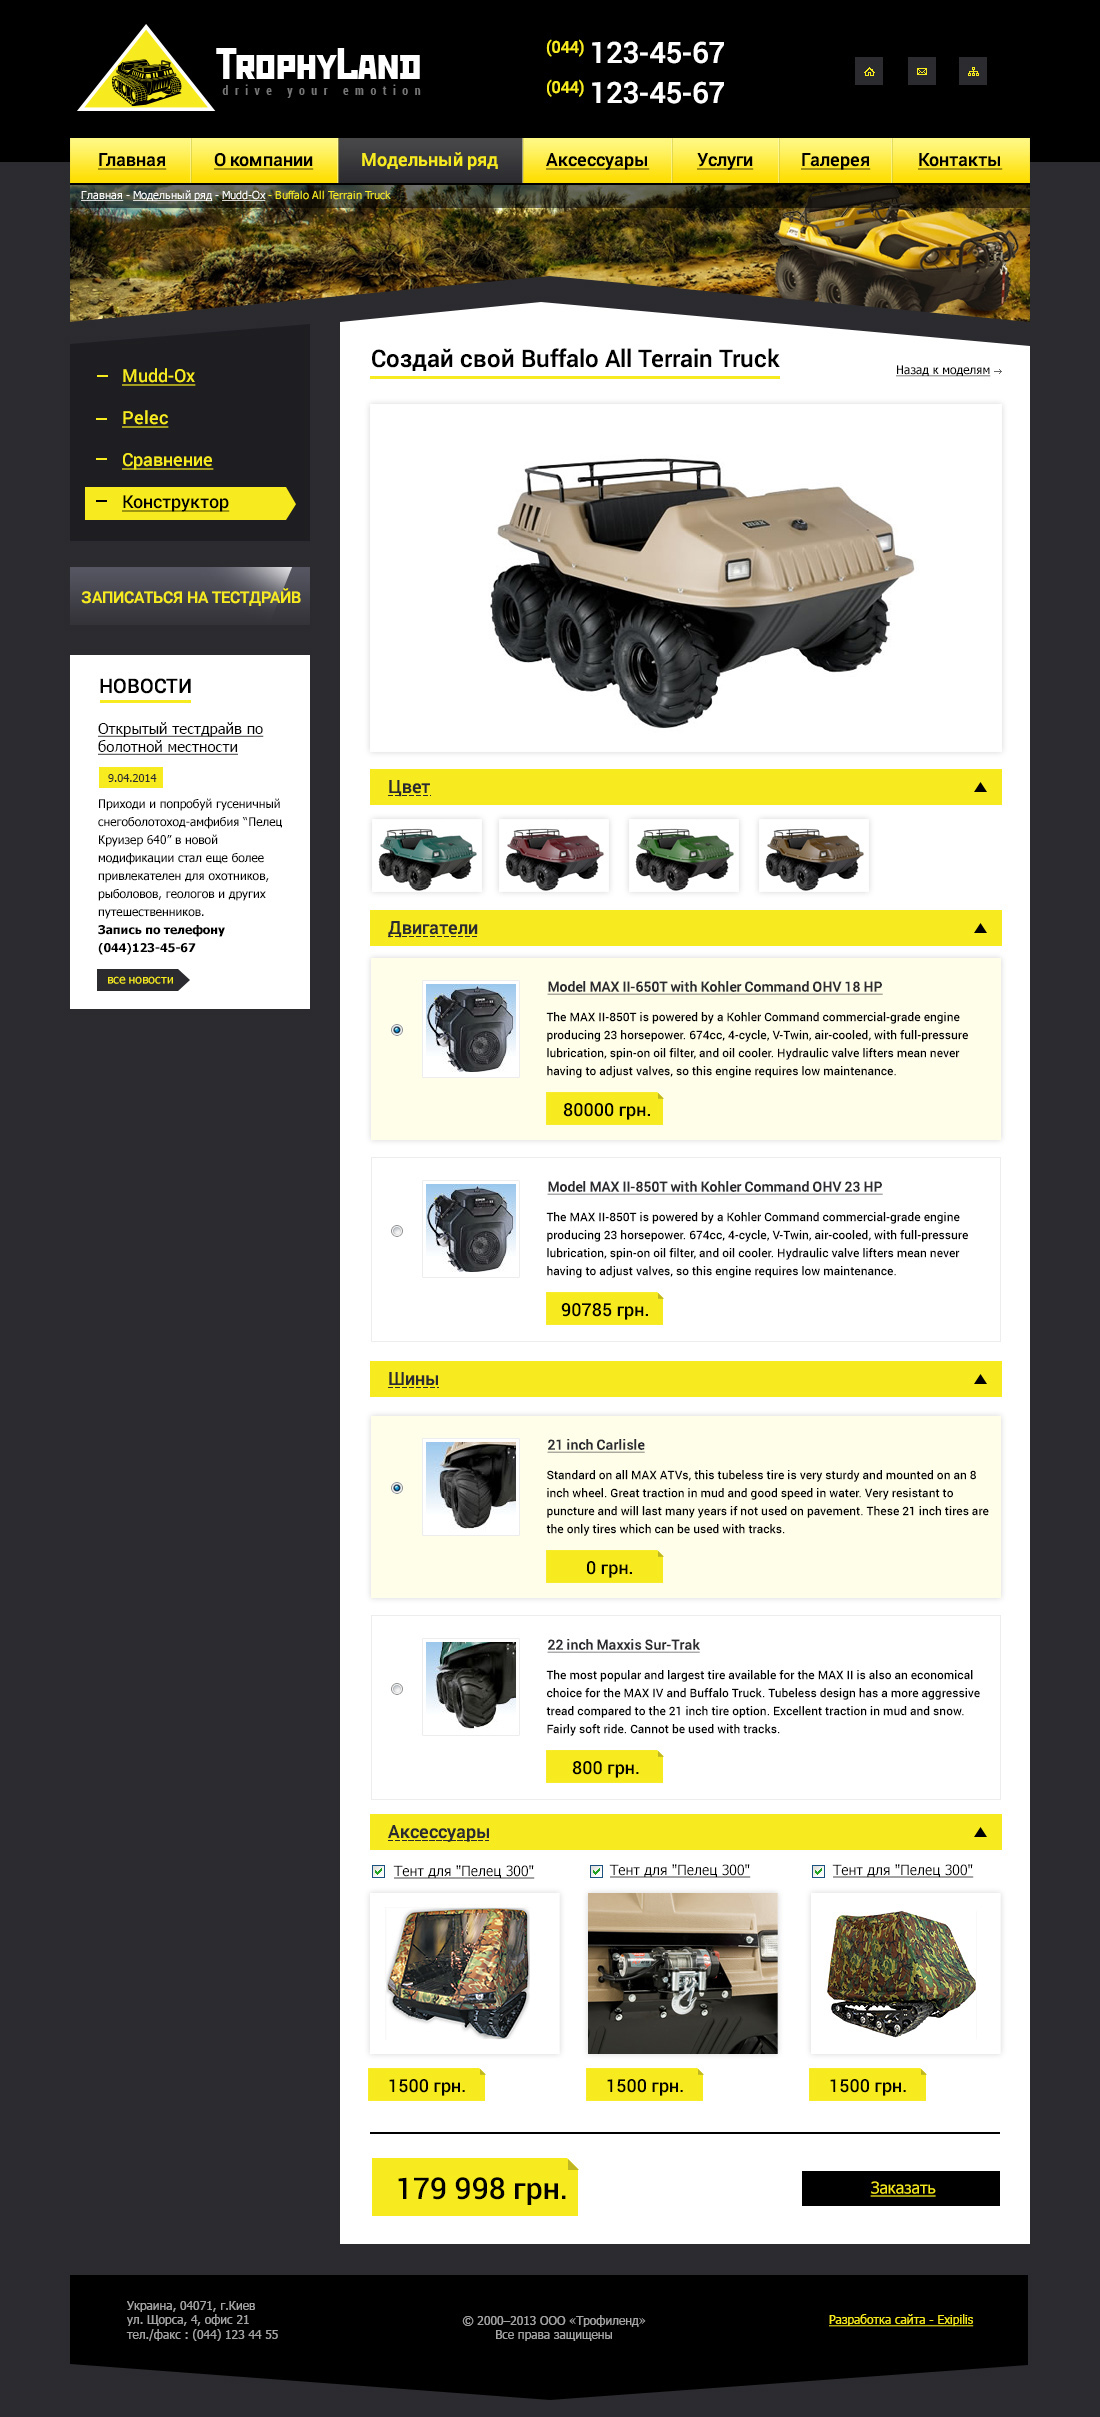 Model page design of TrophyLand website